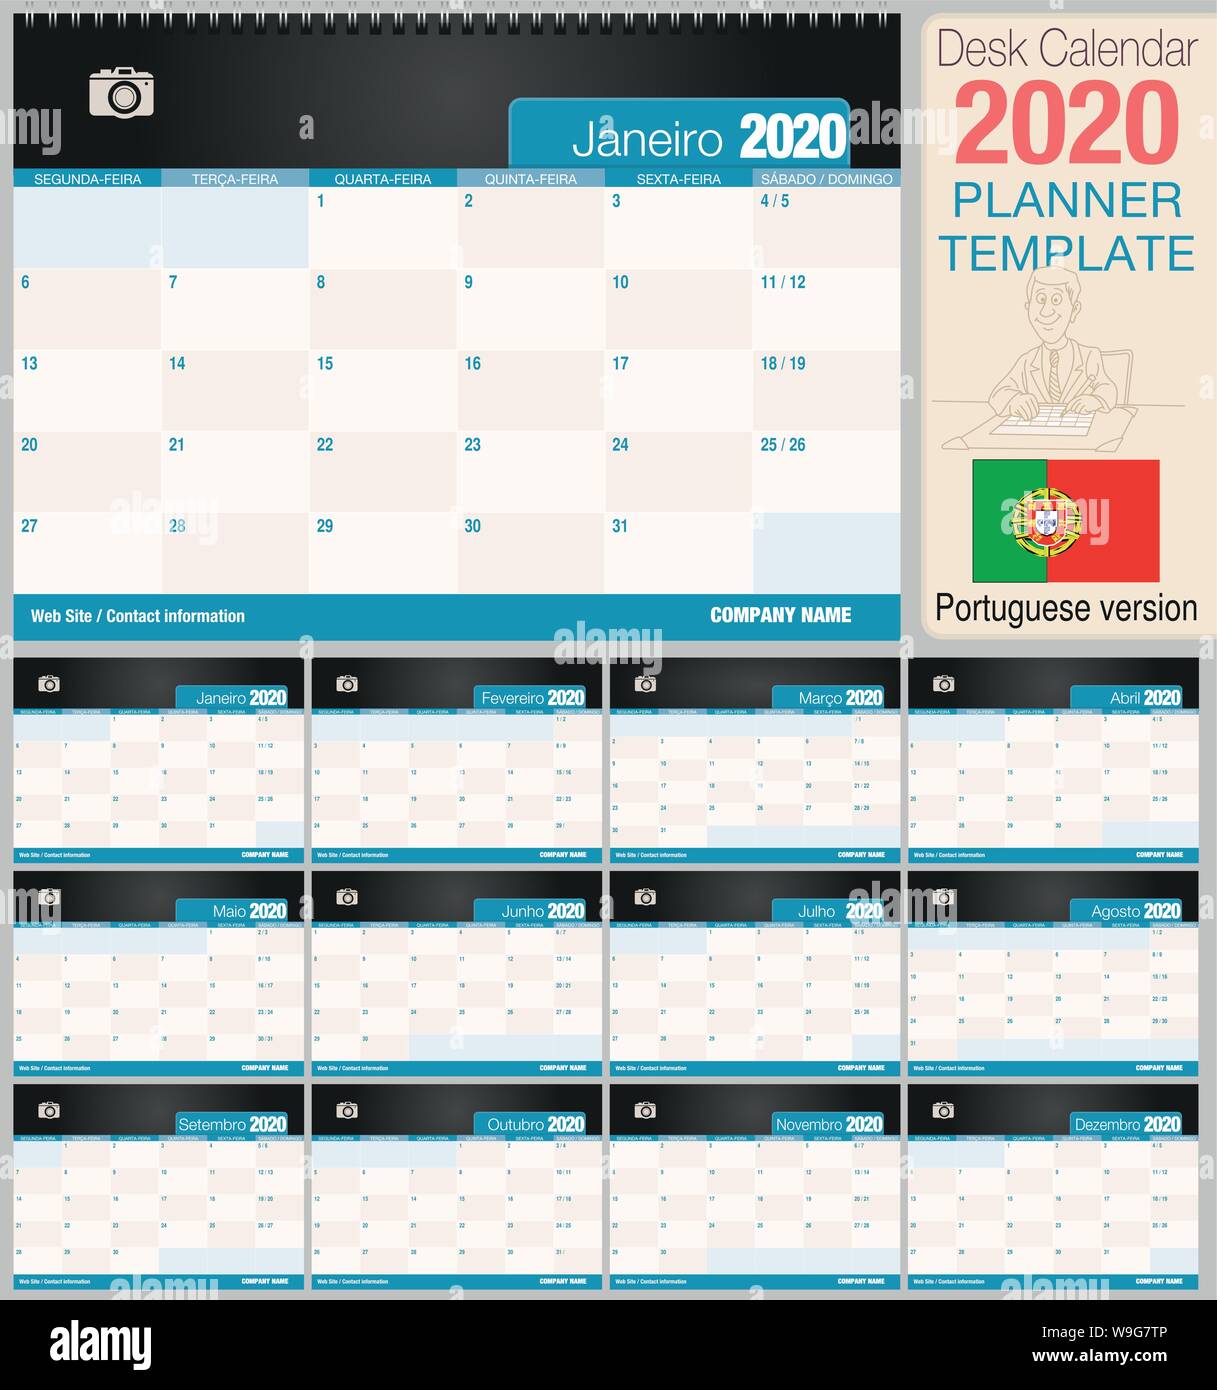 Utile scrivania calendario 2020 con lo spazio per posizionare una foto. Dimensioni: 210 mm x 148 mm. Versione portoghese - immagine vettoriale Illustrazione Vettoriale